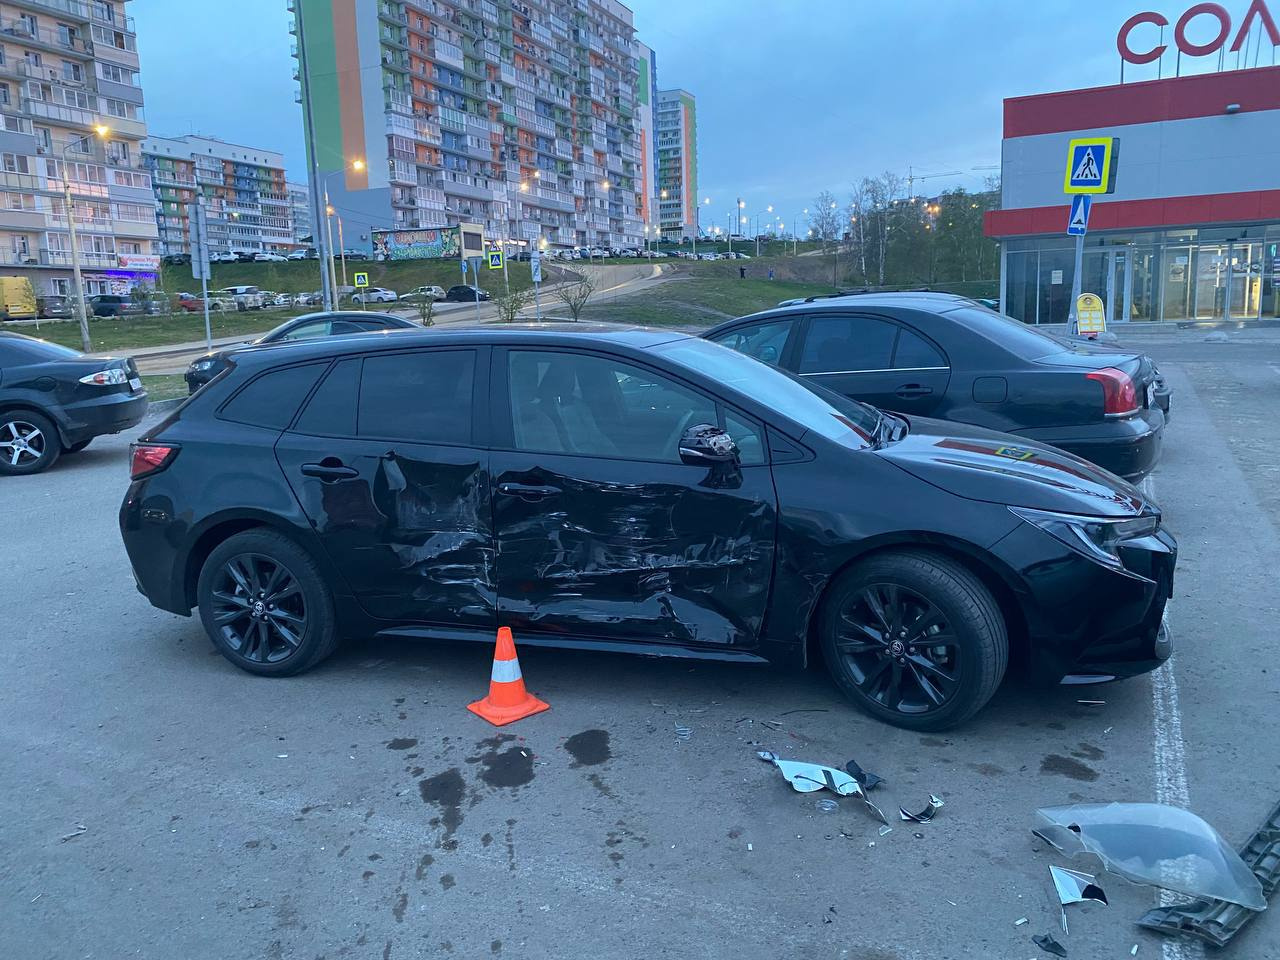 Пьяный подросток угнал у родителей машину и протаранил 10 автомобилей на парковке в Солнечном